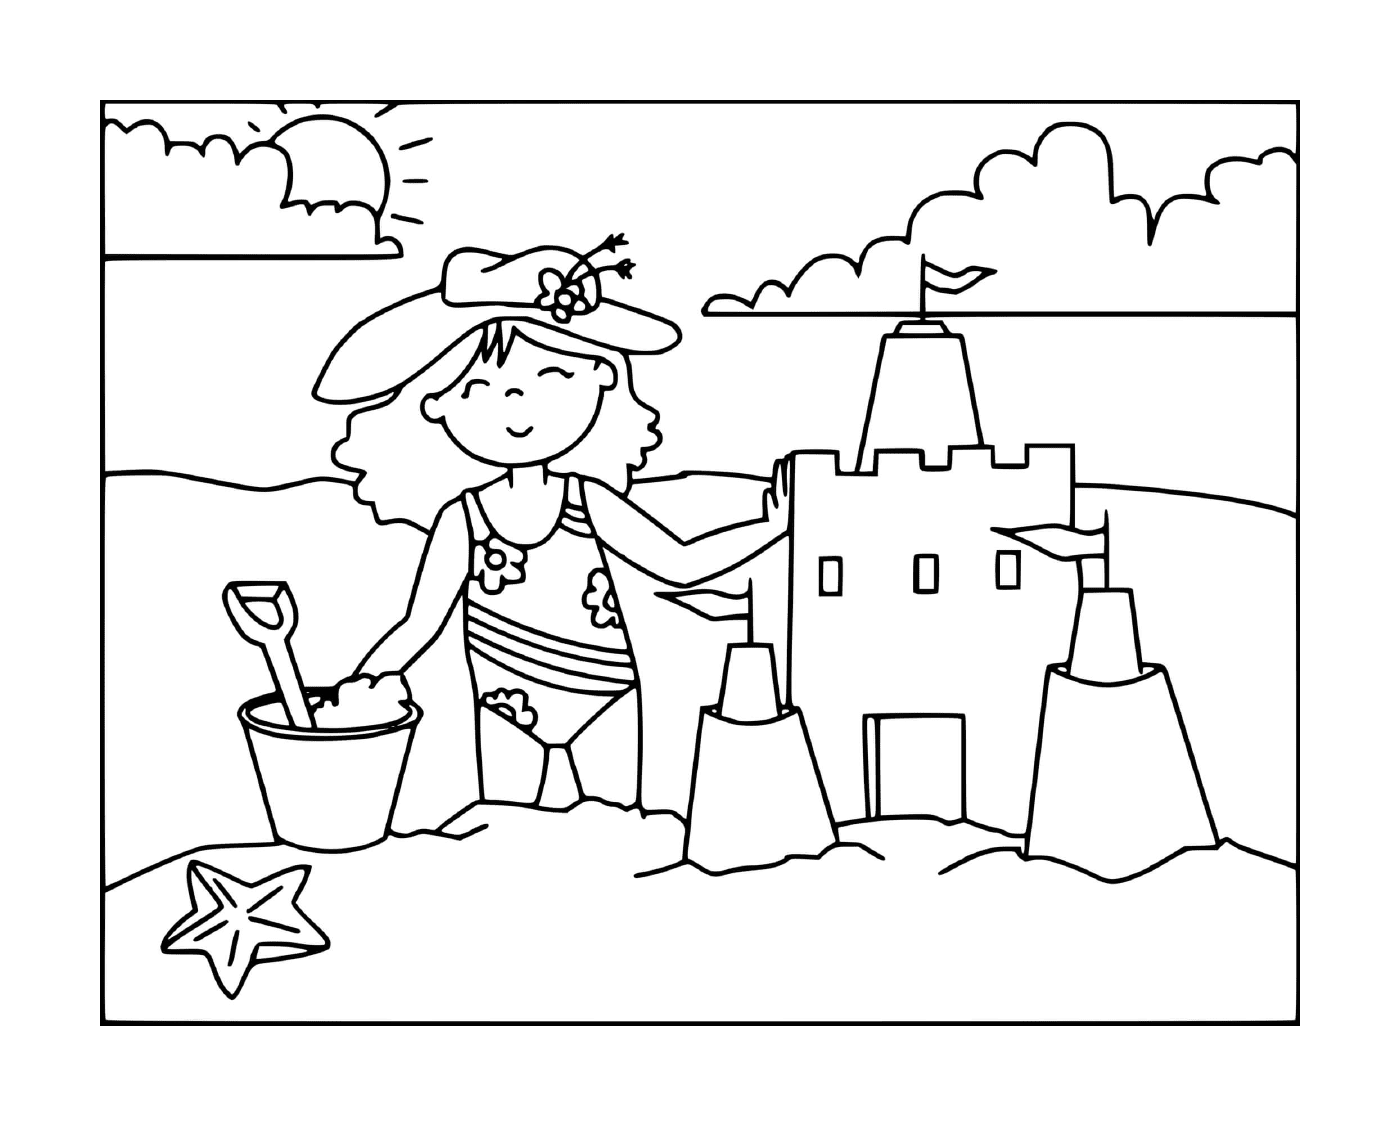  Una ragazza costruisce un castello di sabbia sulla spiaggia 